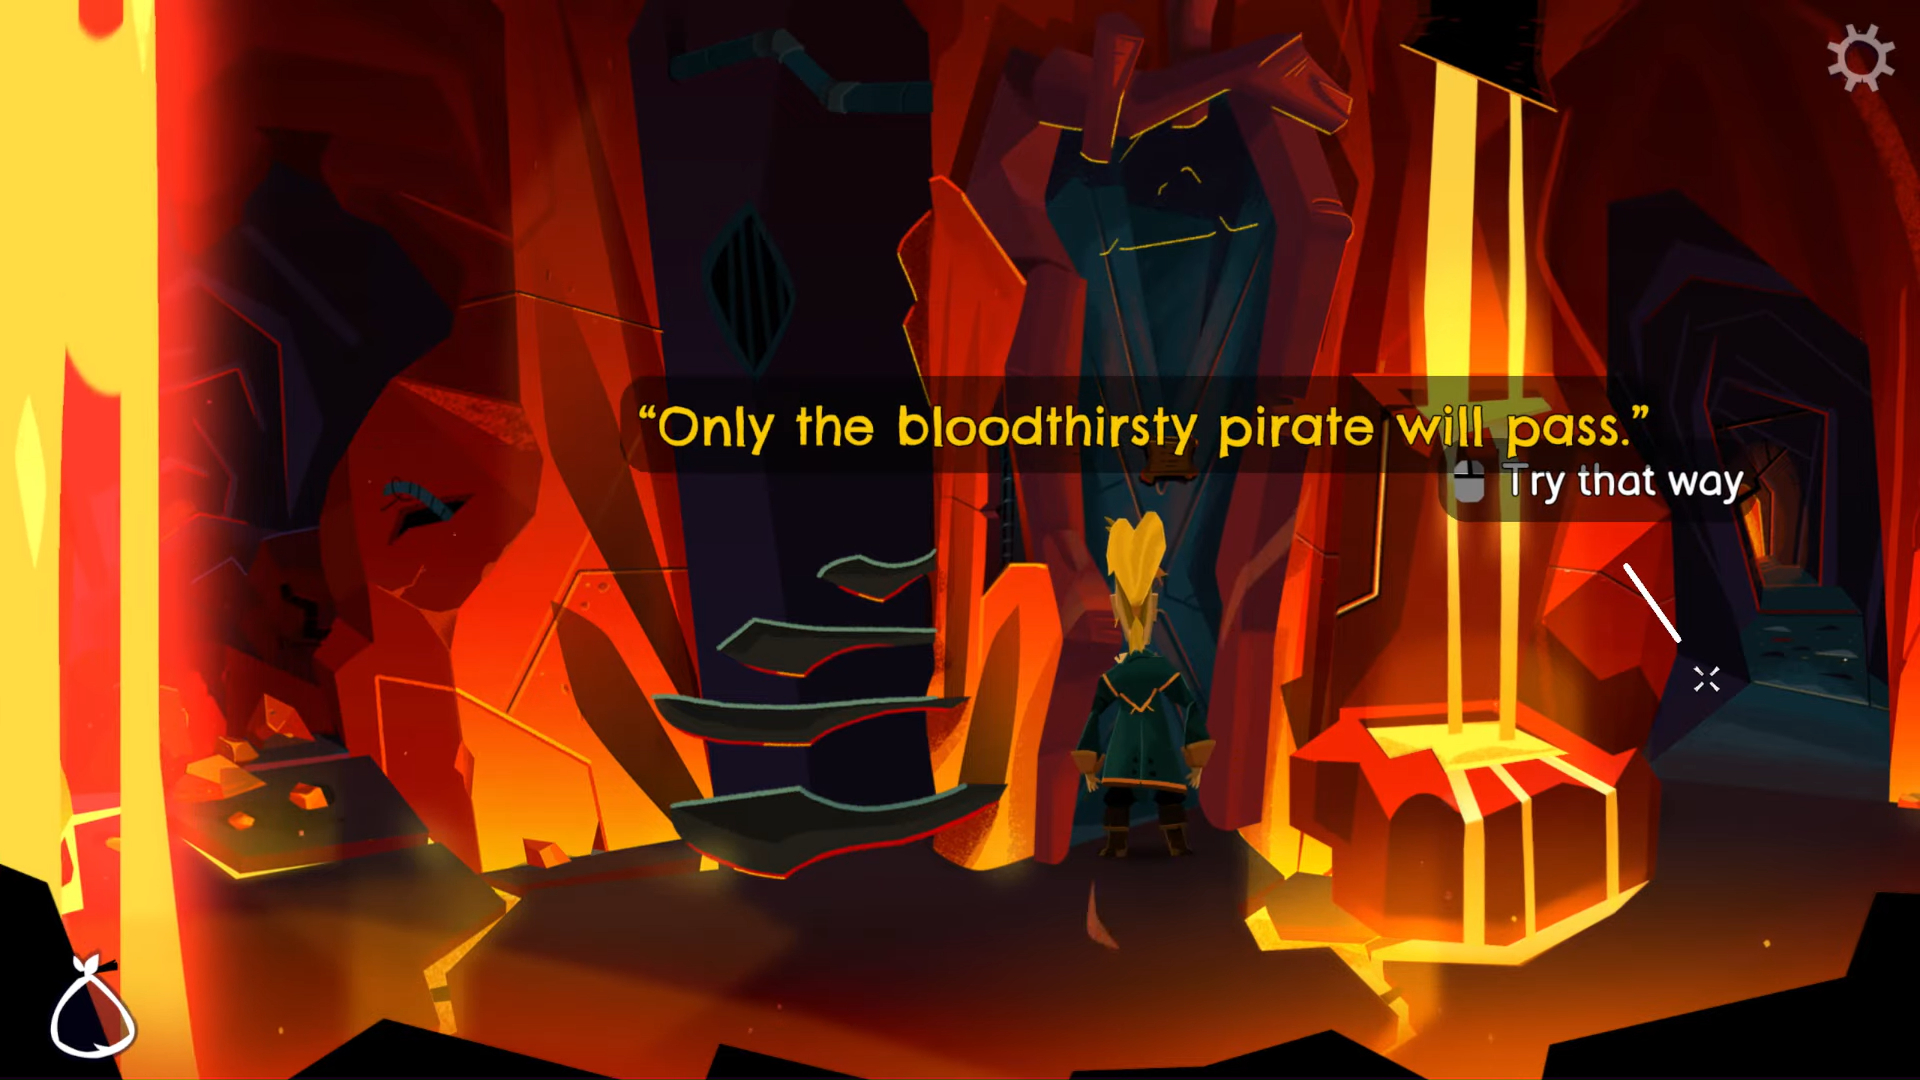 Uma placa dizendo que apenas piratas sanguinários sobreviverão.